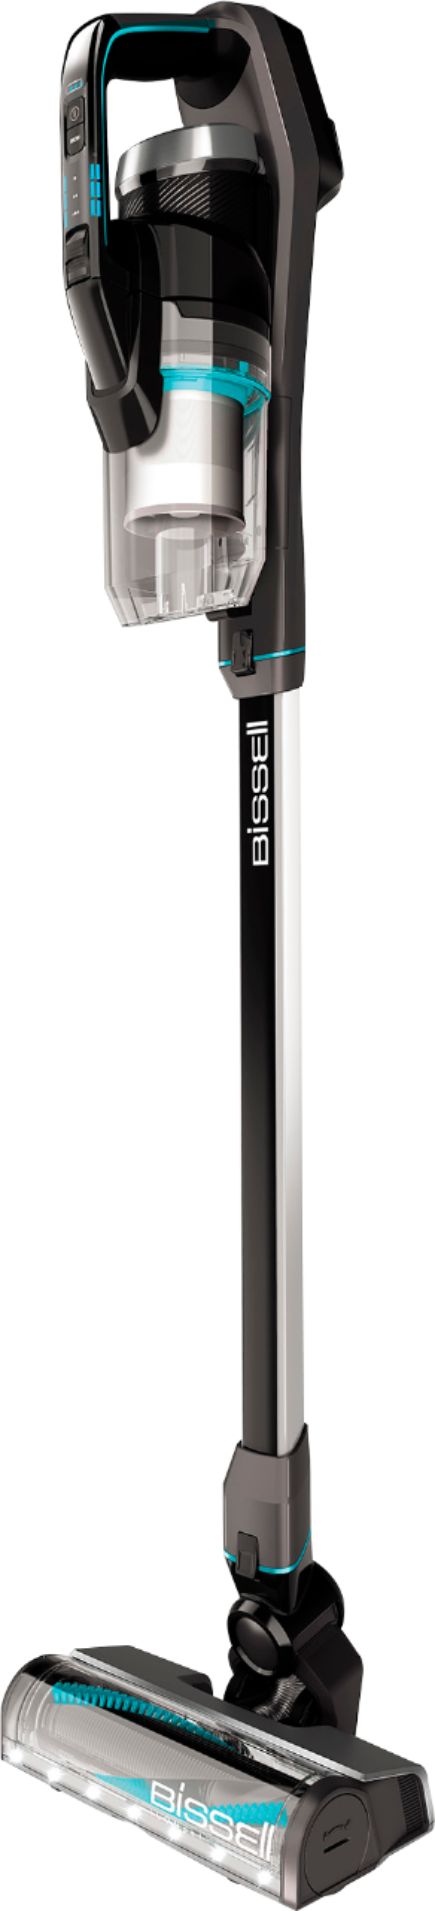 Left View: BISSELL - ICONpet Cordless Stick Vacuum - Titanium/Black